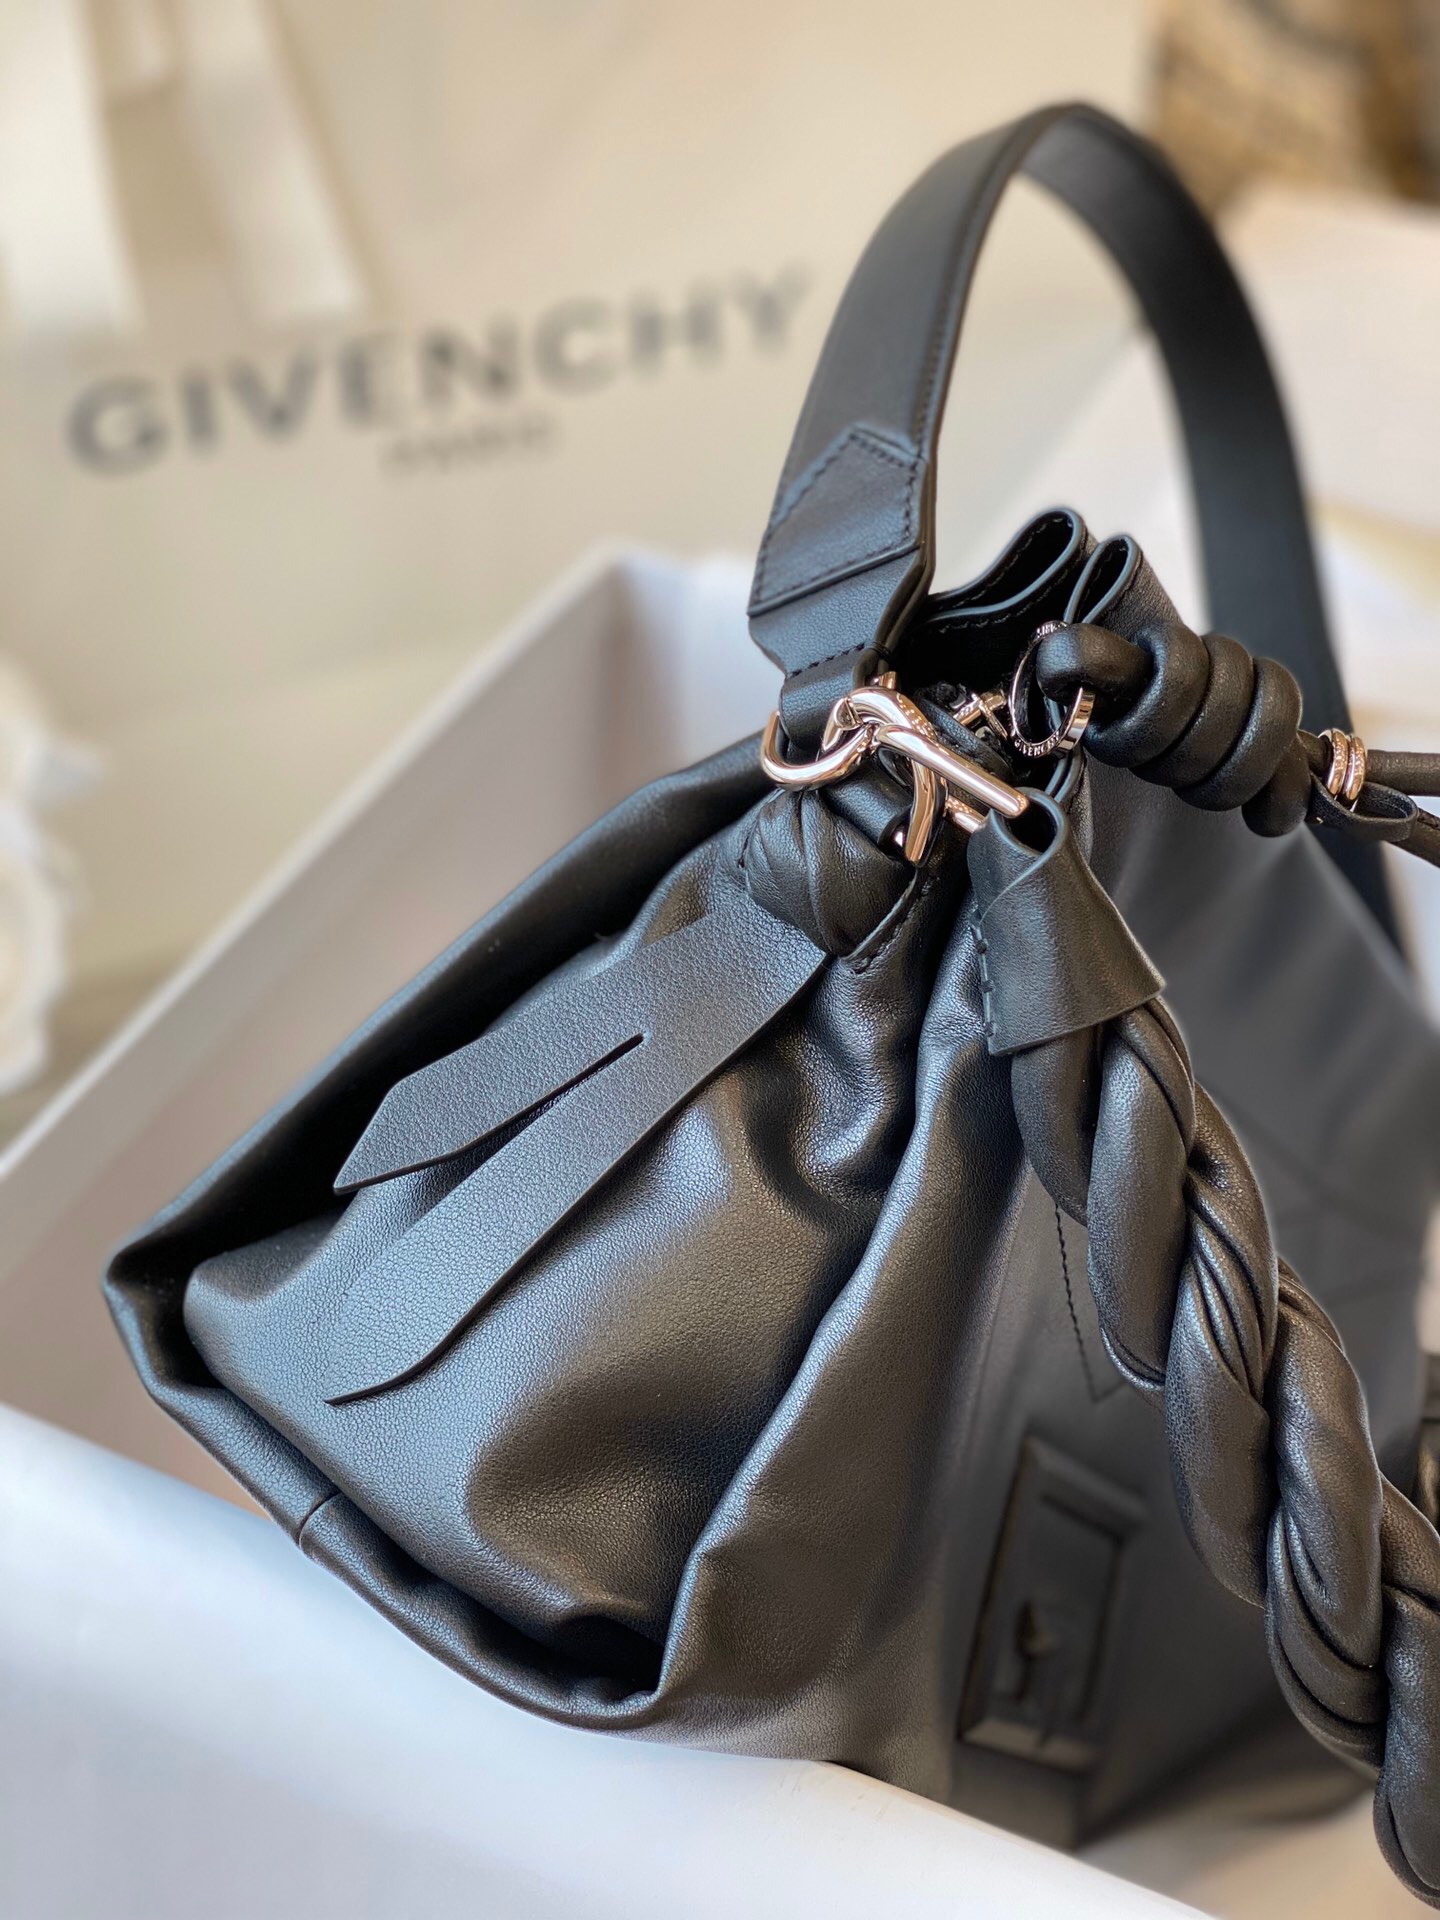 Givenchy Handbags Price | Walden Wong